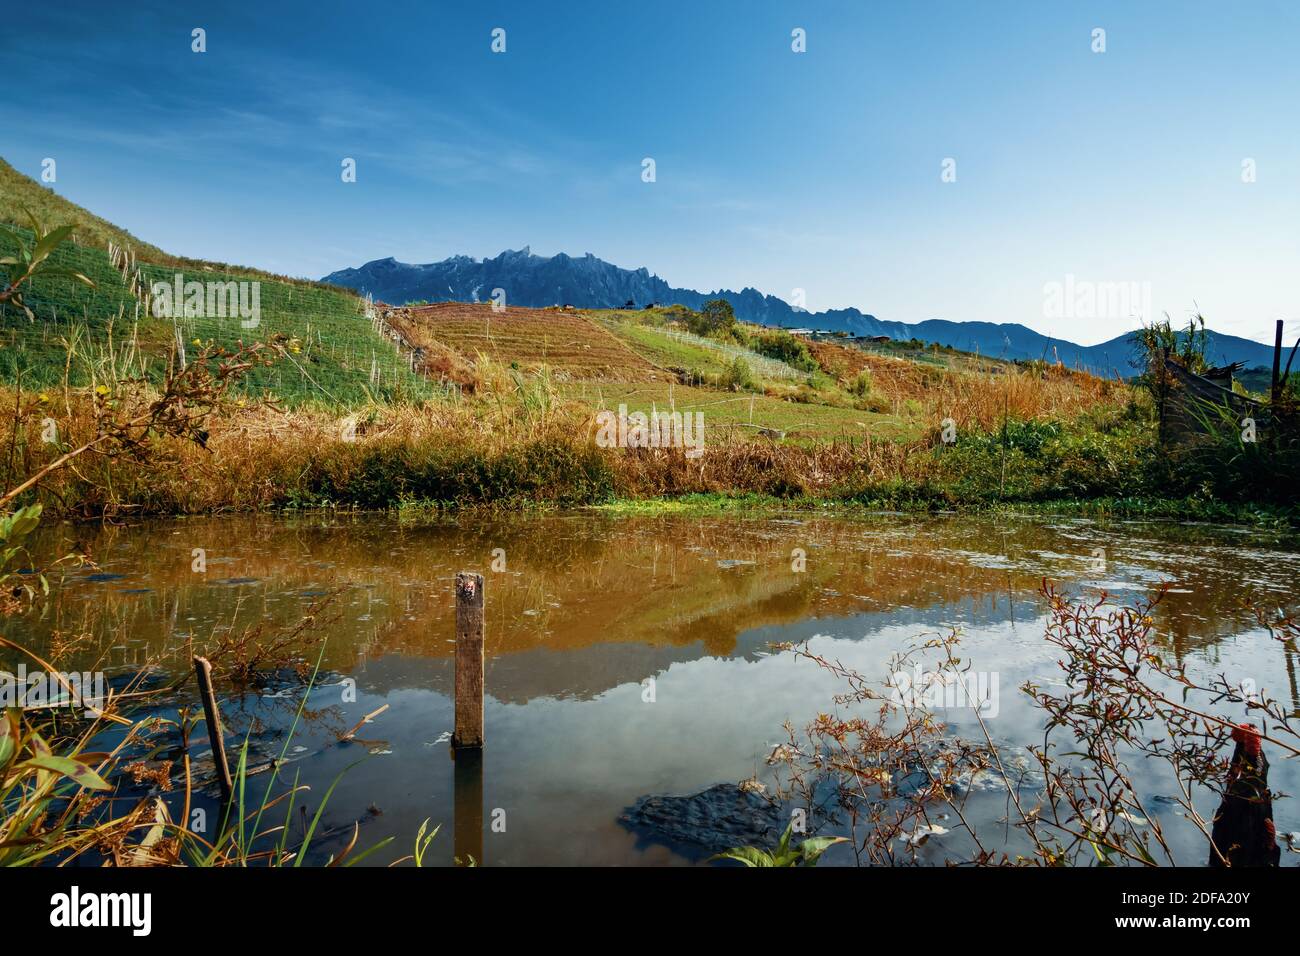 Ein Teich in einem Bauerndorf. Schöne Landschaft Kundasang Blick in der Nähe von Mount Kinabalu. Stockfoto